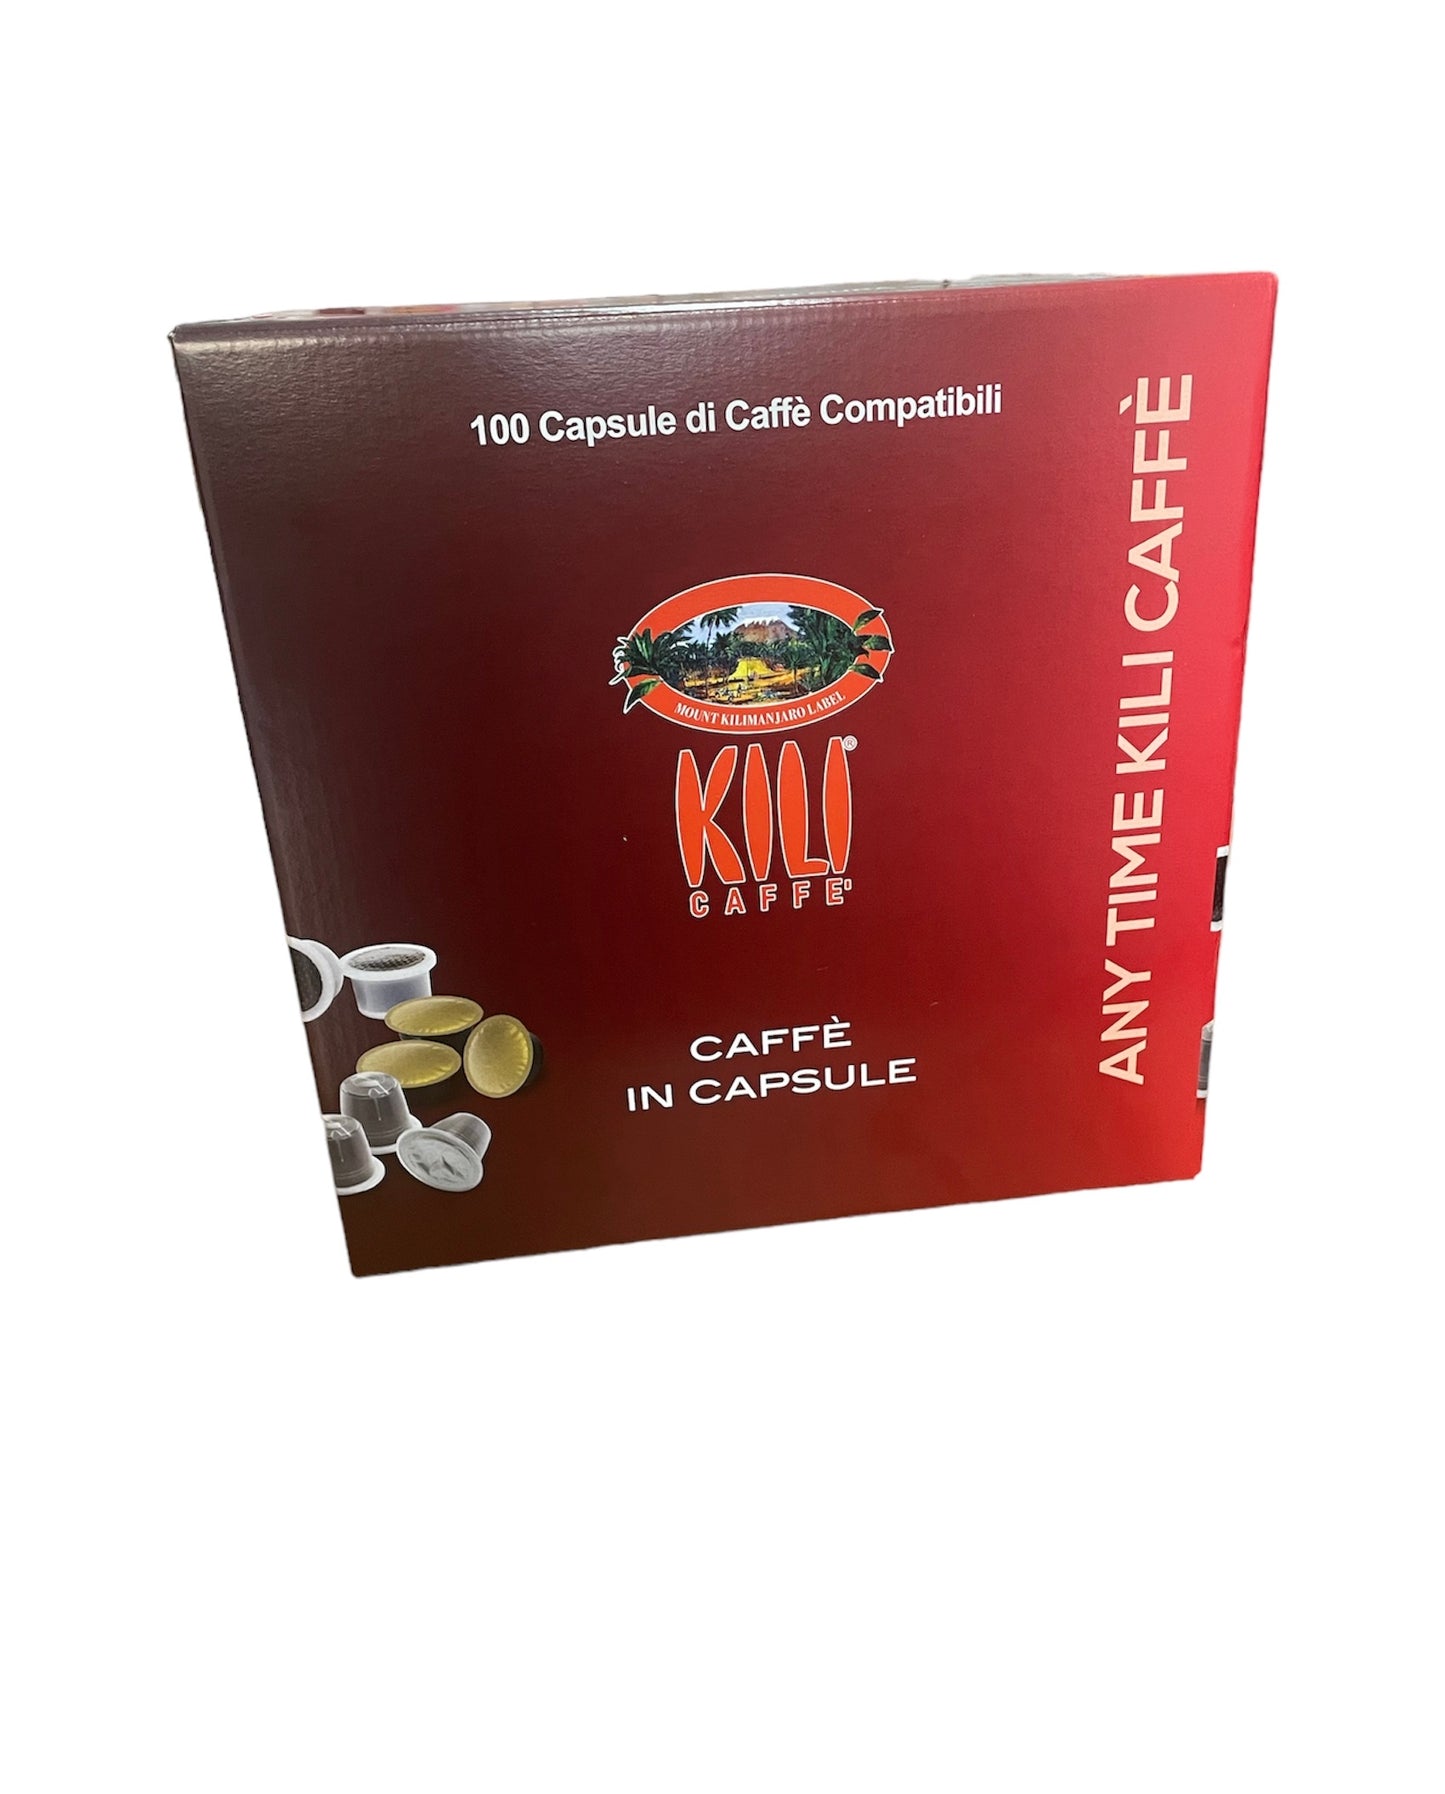 100 ESSE compatibili - Kili Caffè